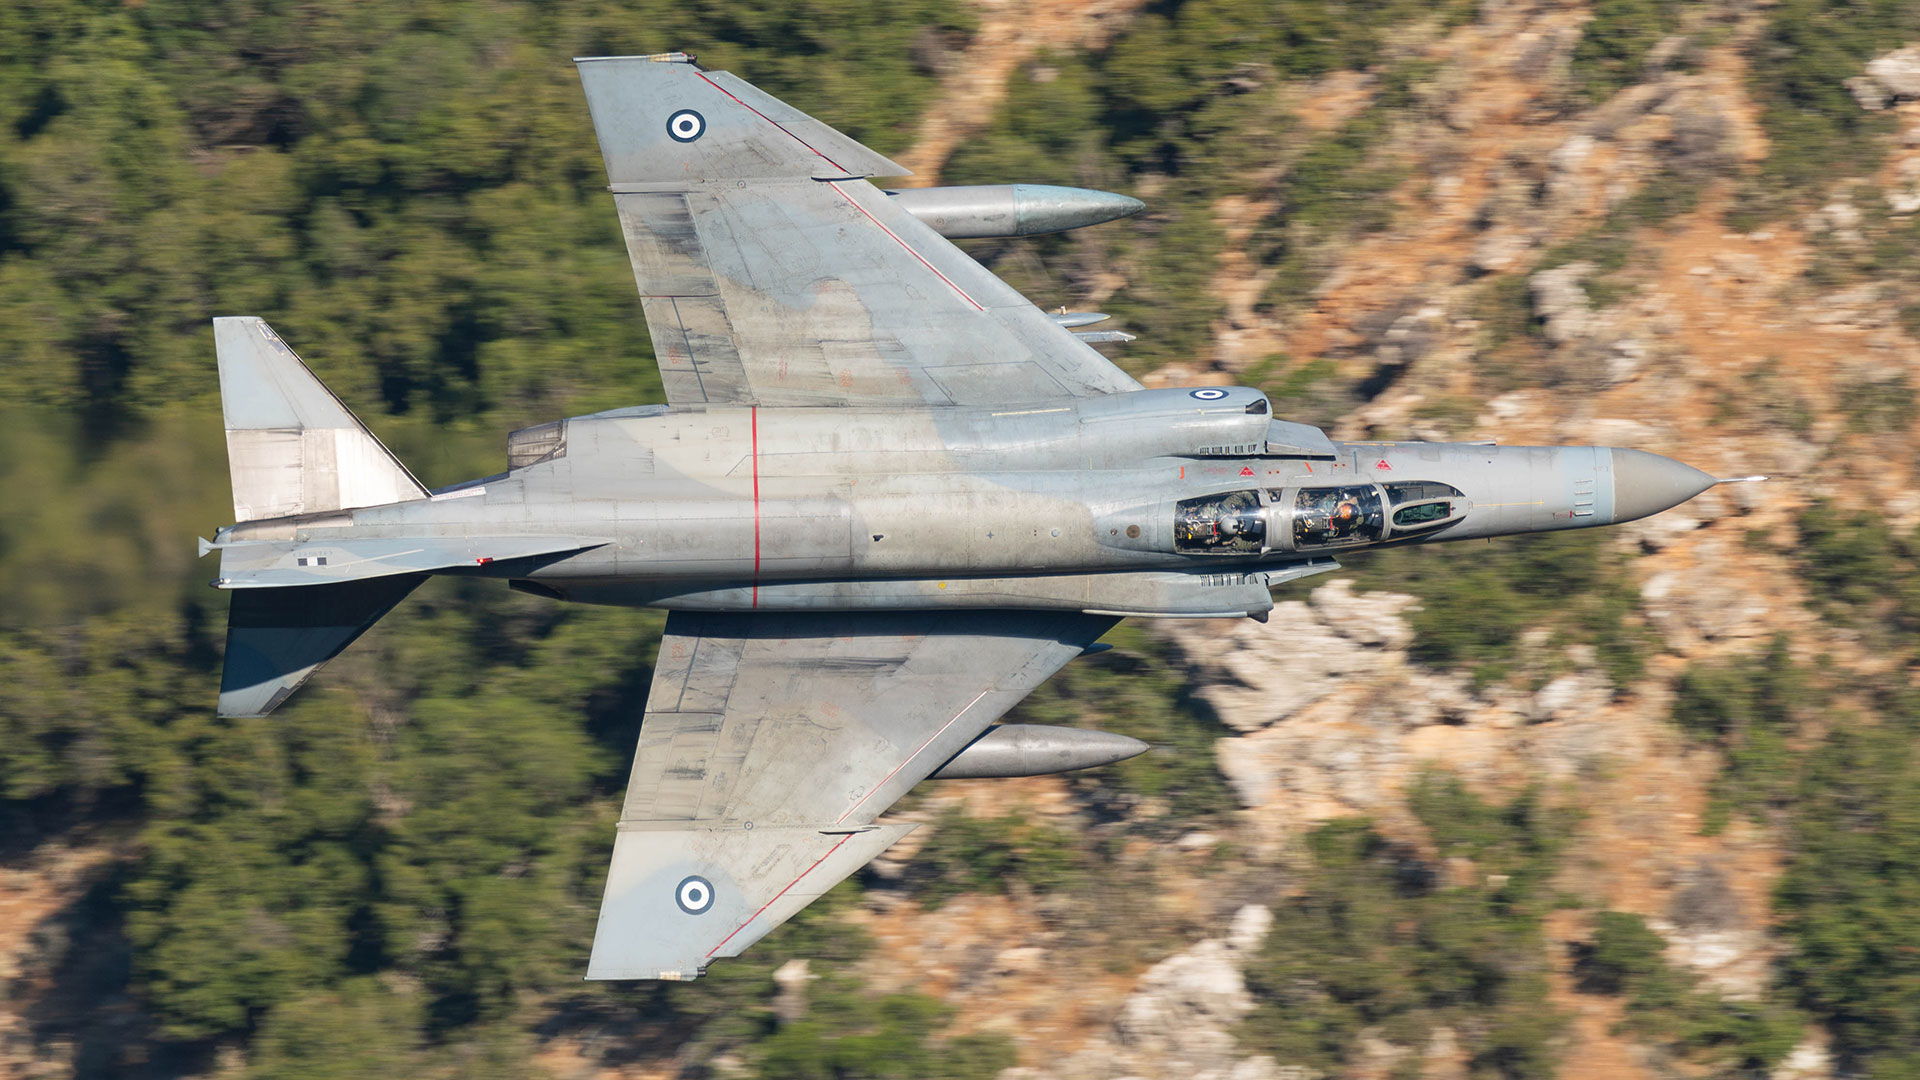 Το Mach Loop της Ελλάδας – Χαμηλές πτήσεις μαχητικών στο φαράγγι του Βουραϊκού-3